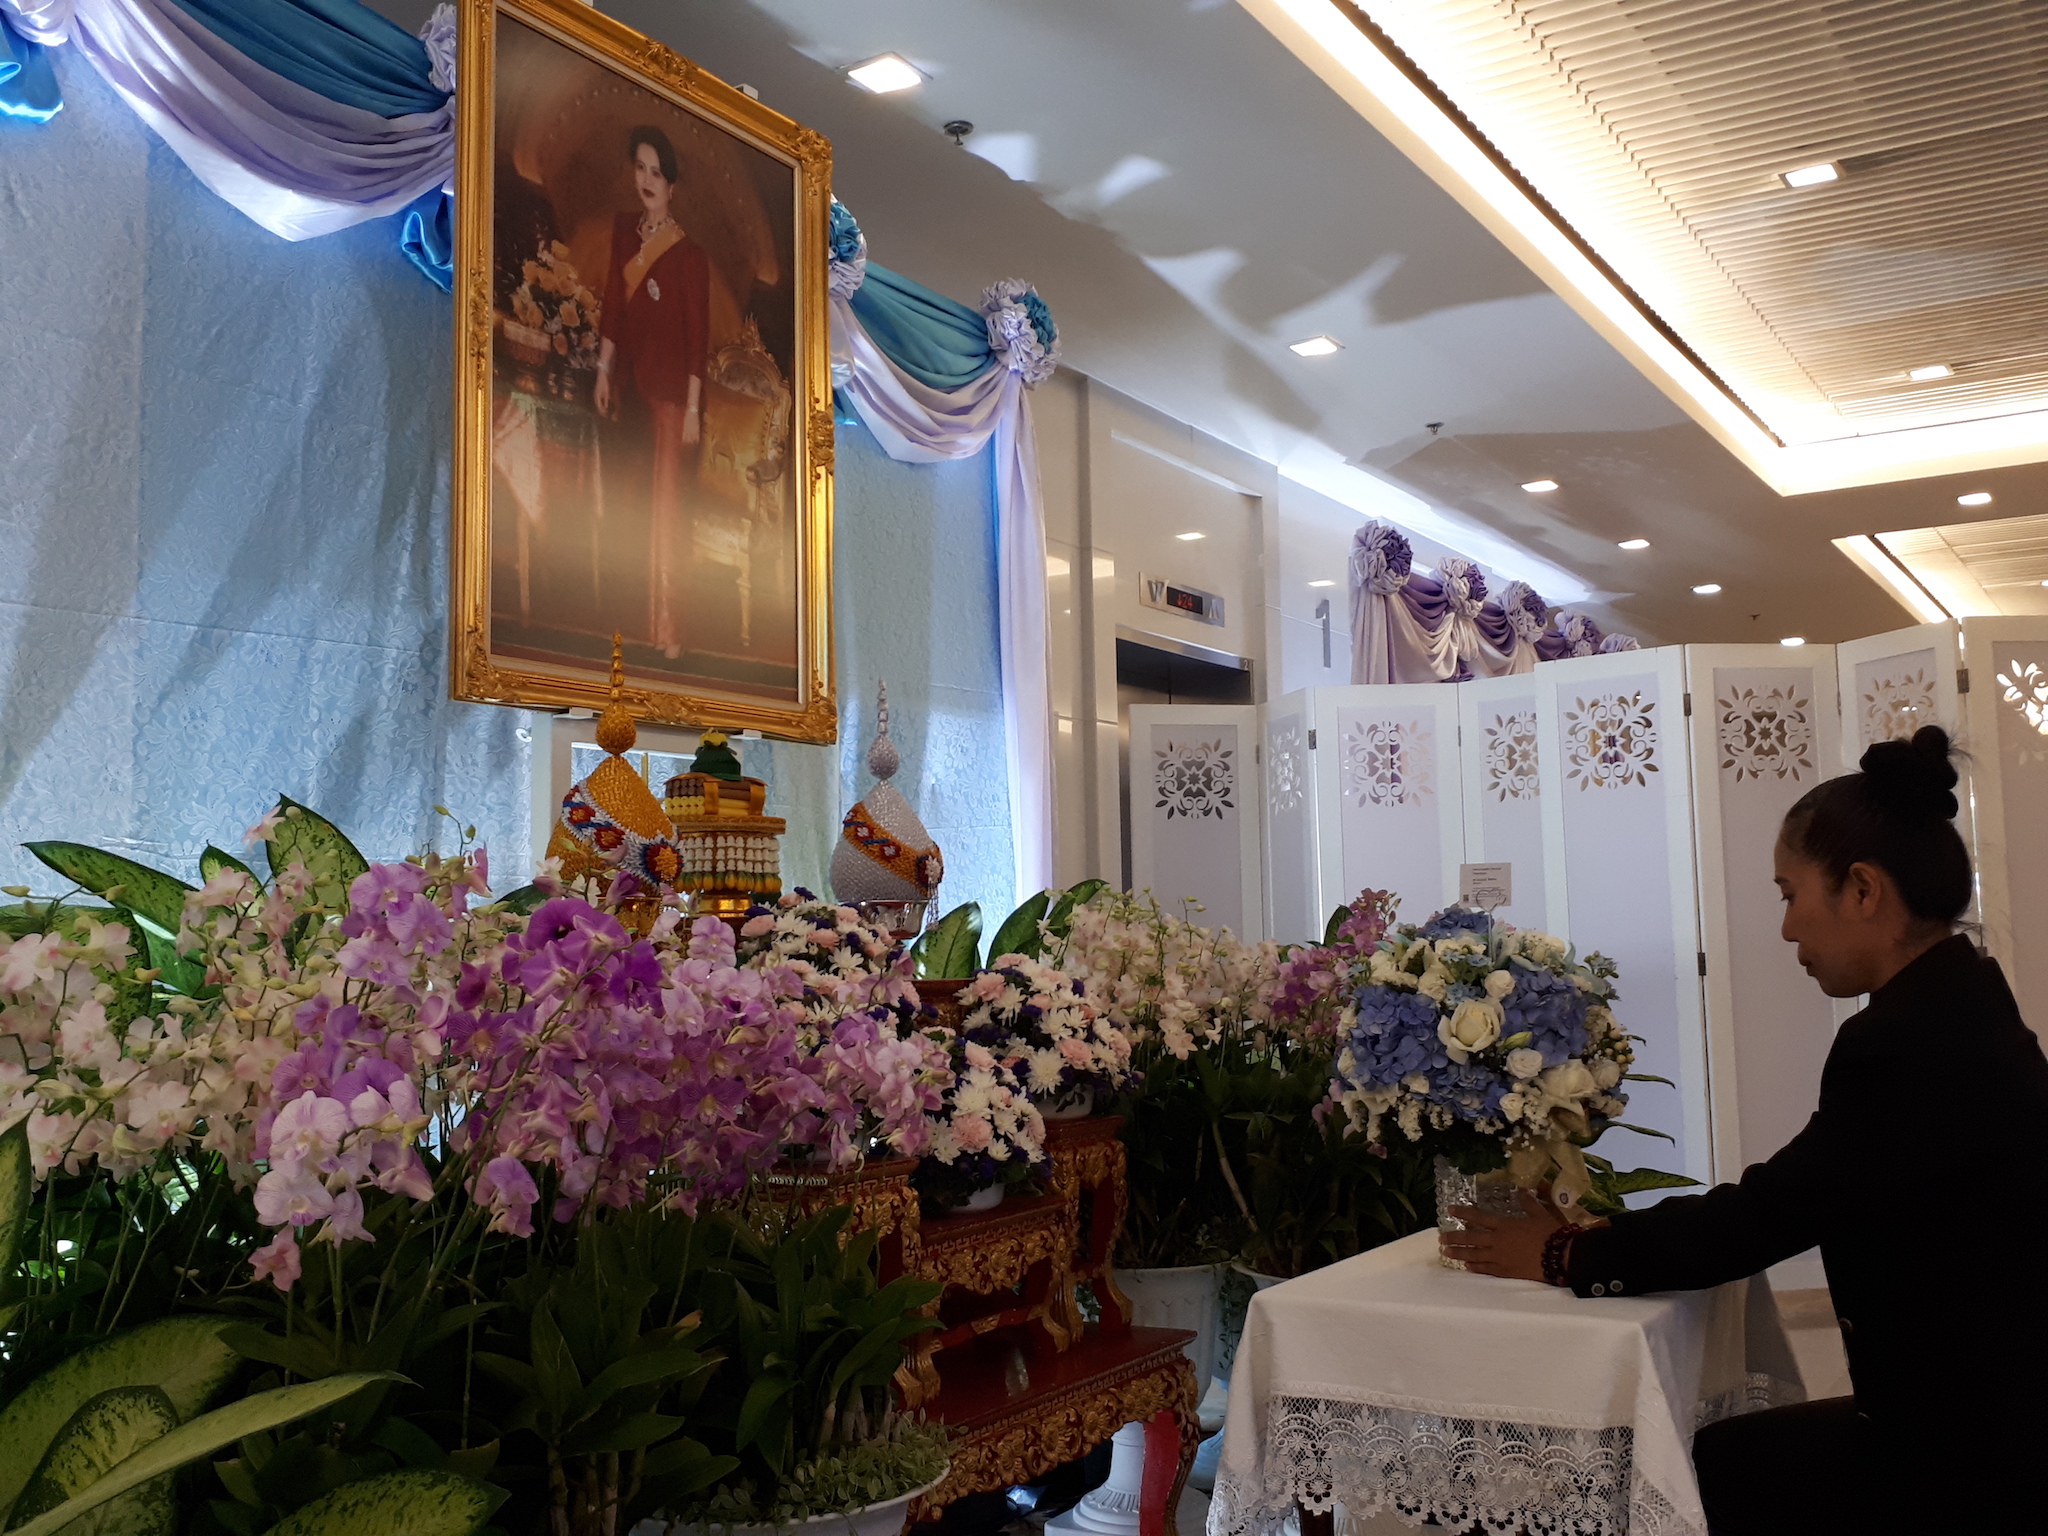 กิจกรรมลงนามถวายพระพรสมเด็จพระนางเจ้าสิริกิติ์  วันที่ 23  พฤษภาคม 2562 ณ อาคารภูมิสิริมังคลานุสรณ์ โรงพยาบาลจุฬาลงกรณ์ สภากาชาดไทย กรุงเทพมหานคร